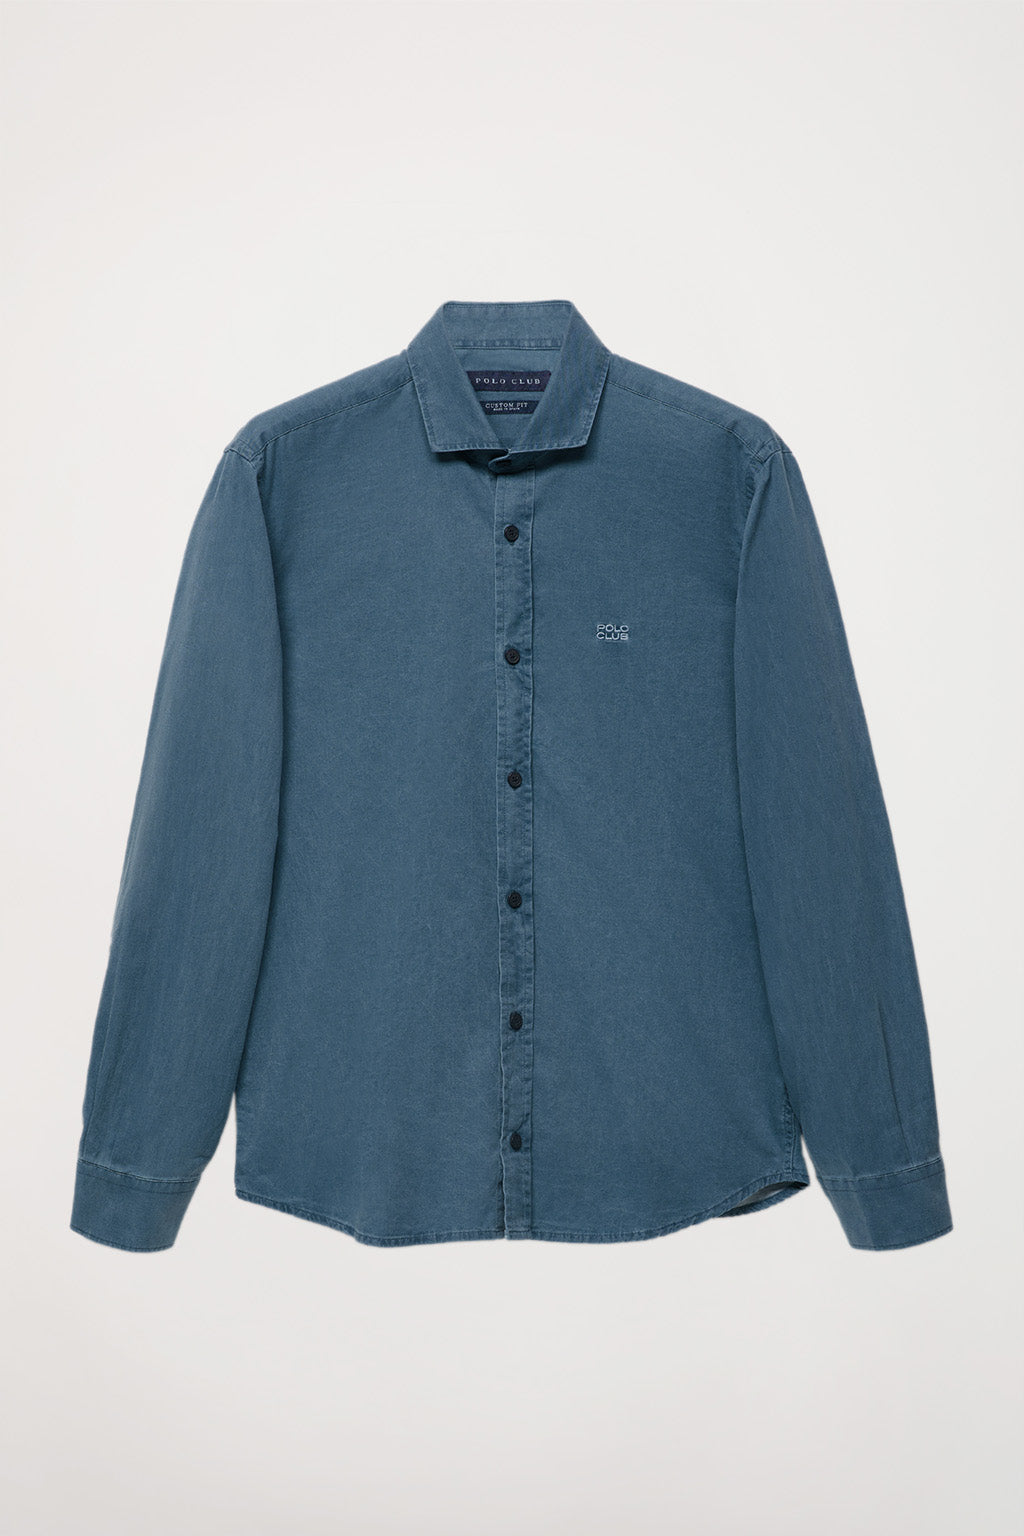 Moderador Conceder Albardilla Camisa lavada azul denim y logo bordado – Polo Club